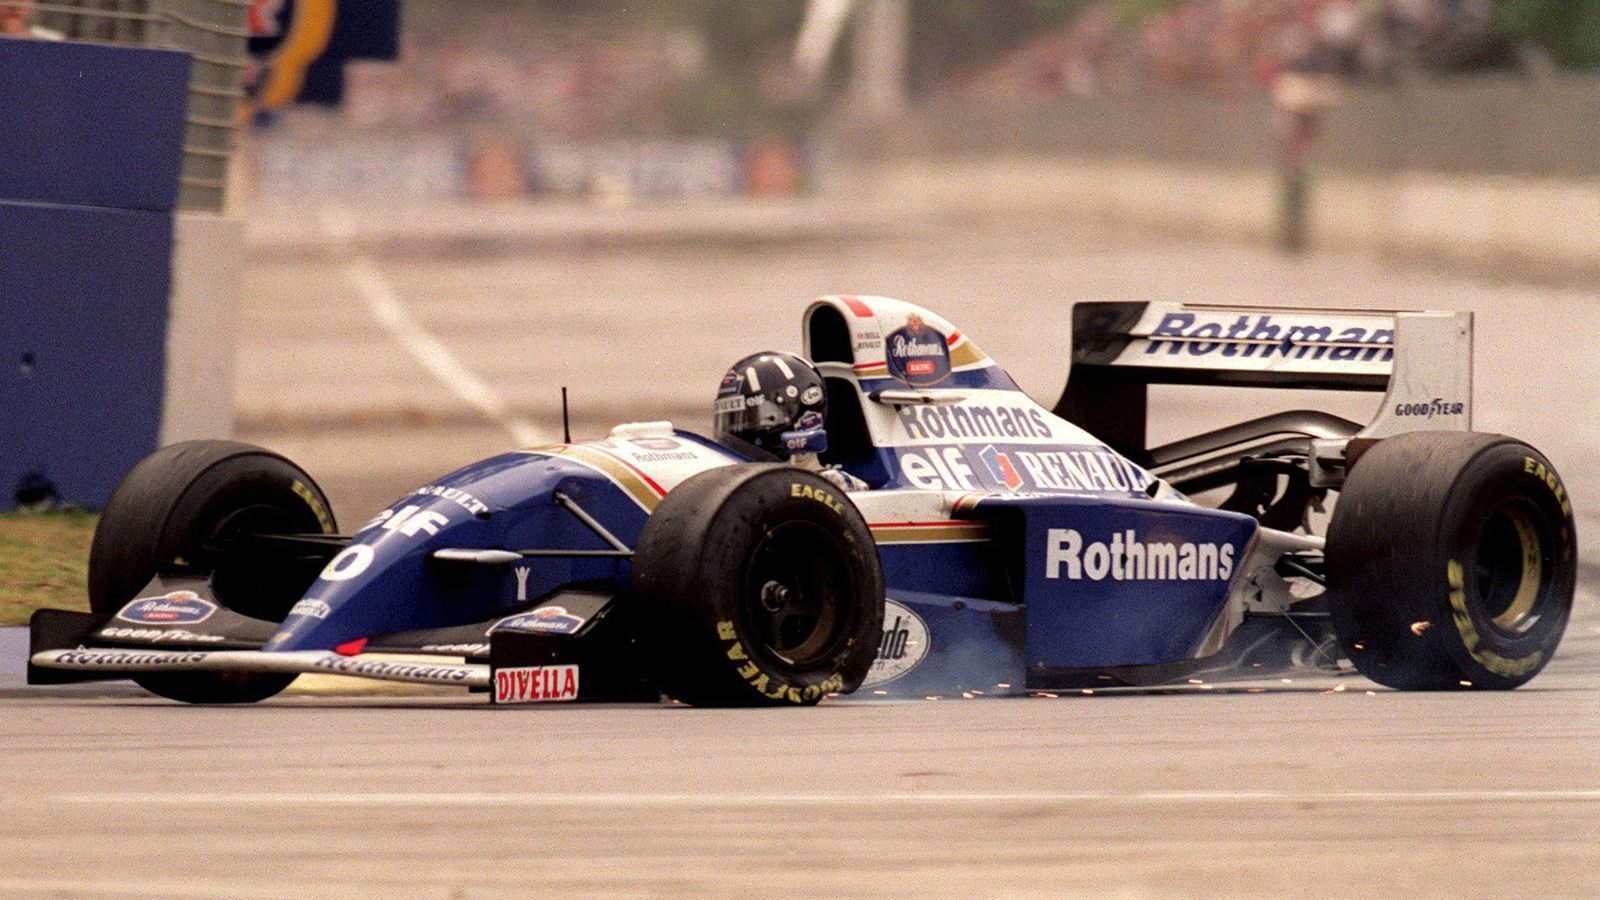 
                <strong>16. Saisonlauf: Australien-GP in Adelaide</strong><br>
                Schumacher fährt beim Einlenken mit dem rechten Hinterreifen über das linke Vorderrad des Williams und landet anschließend in den Reifenstapeln. Schumi ist raus, Hill schleppt sich in die Box und muss dort aufgeben. Schumacher harrt hinter dem Sicherheitszaun aus. Lange weiß er nichts von seinem Glück. "Es war schrecklich, da draußen warten zu müssen. Aber es war unbeschreiblich, als es dann endlich feststand. Obwohl ich damals so konfus war, dass ich das gar nicht richtig einordnen konnte. Dass ich Weltmeister geworden sein sollte, das habe ich lange nicht richtig kapiert", sagt er. Weltmeister ist er aber, wenn auch kontrovers. Die britischen Medien stürzen sich auf Schumacher, Williams verzichtet aber auf einen Protest.
              